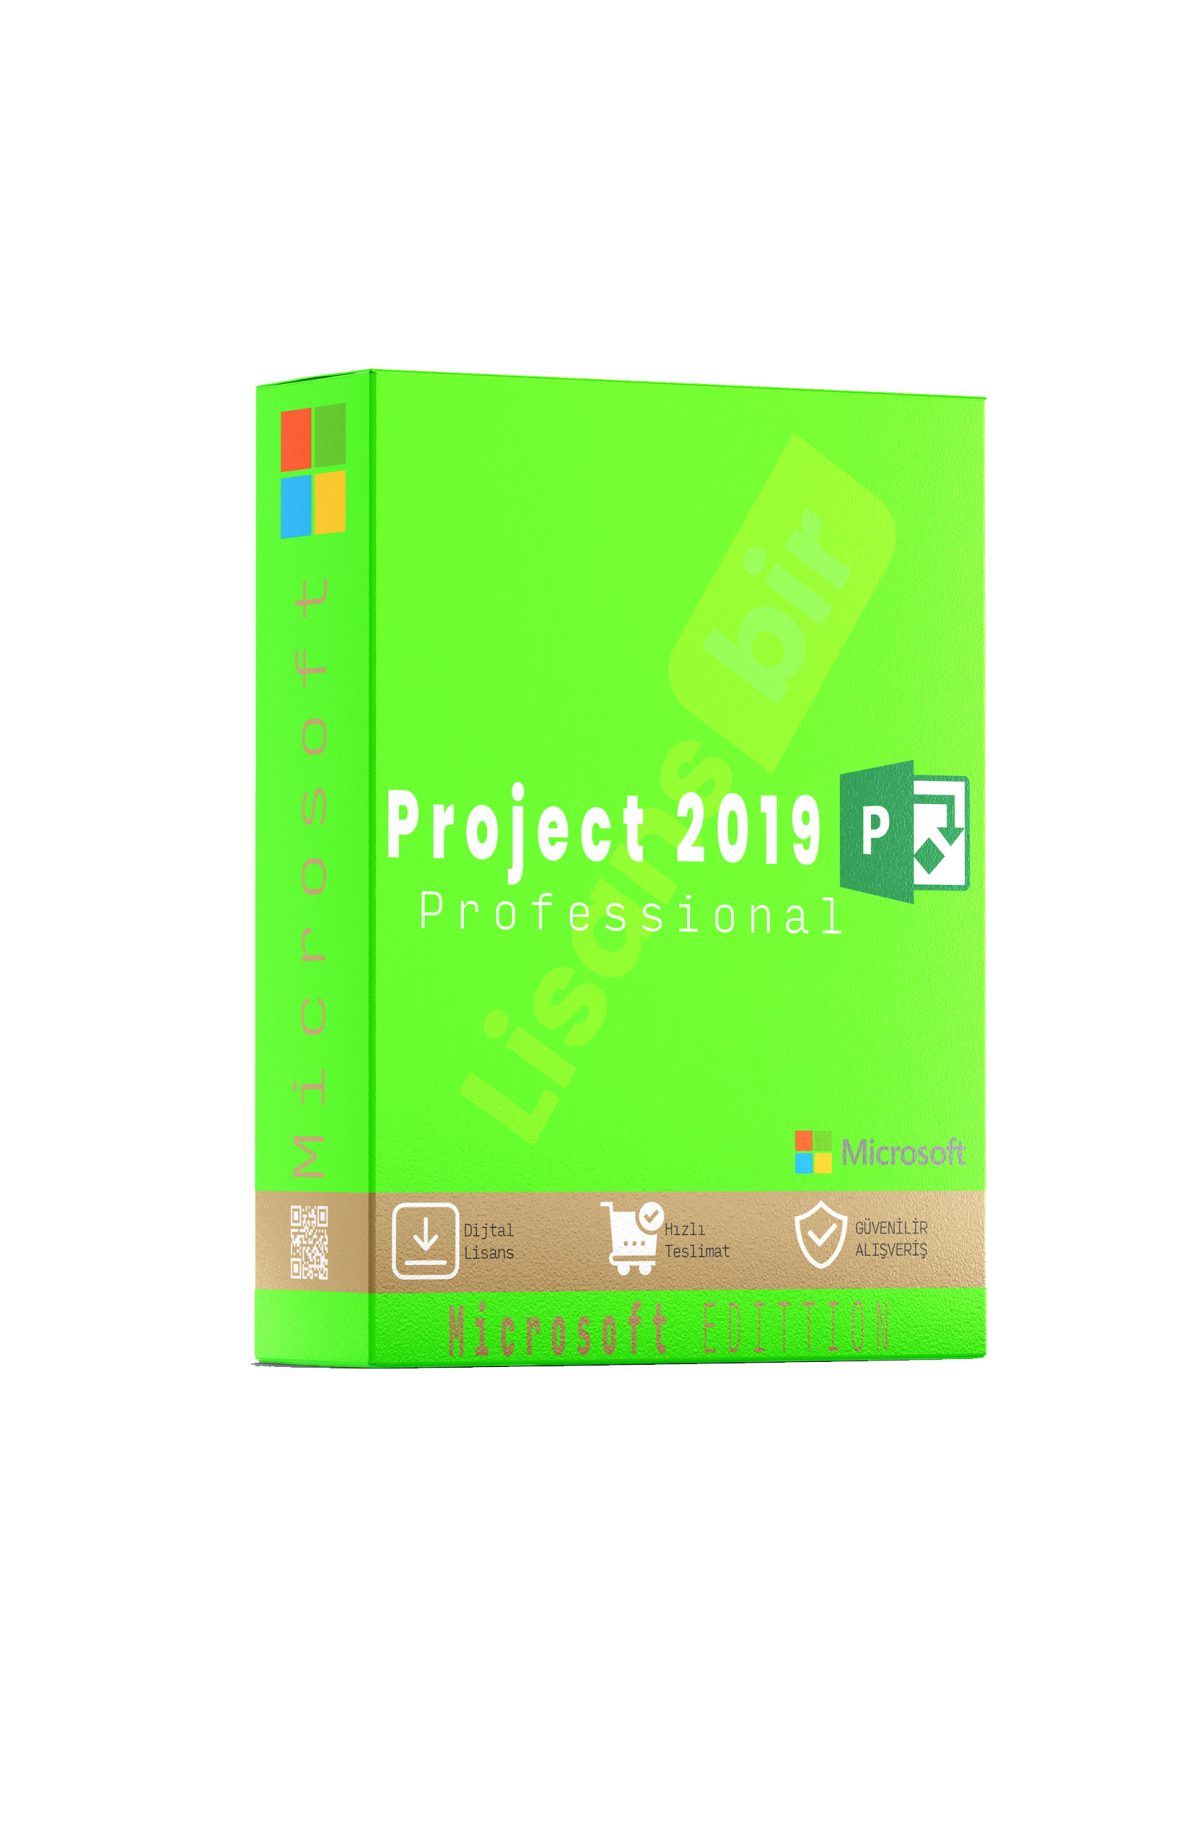 Project Pro 2019 özellikleri ve çekici yönleri hakkında daha fazla bilgi için Lisansbir ürün sayfasını ziyaret edebilirsiniz.